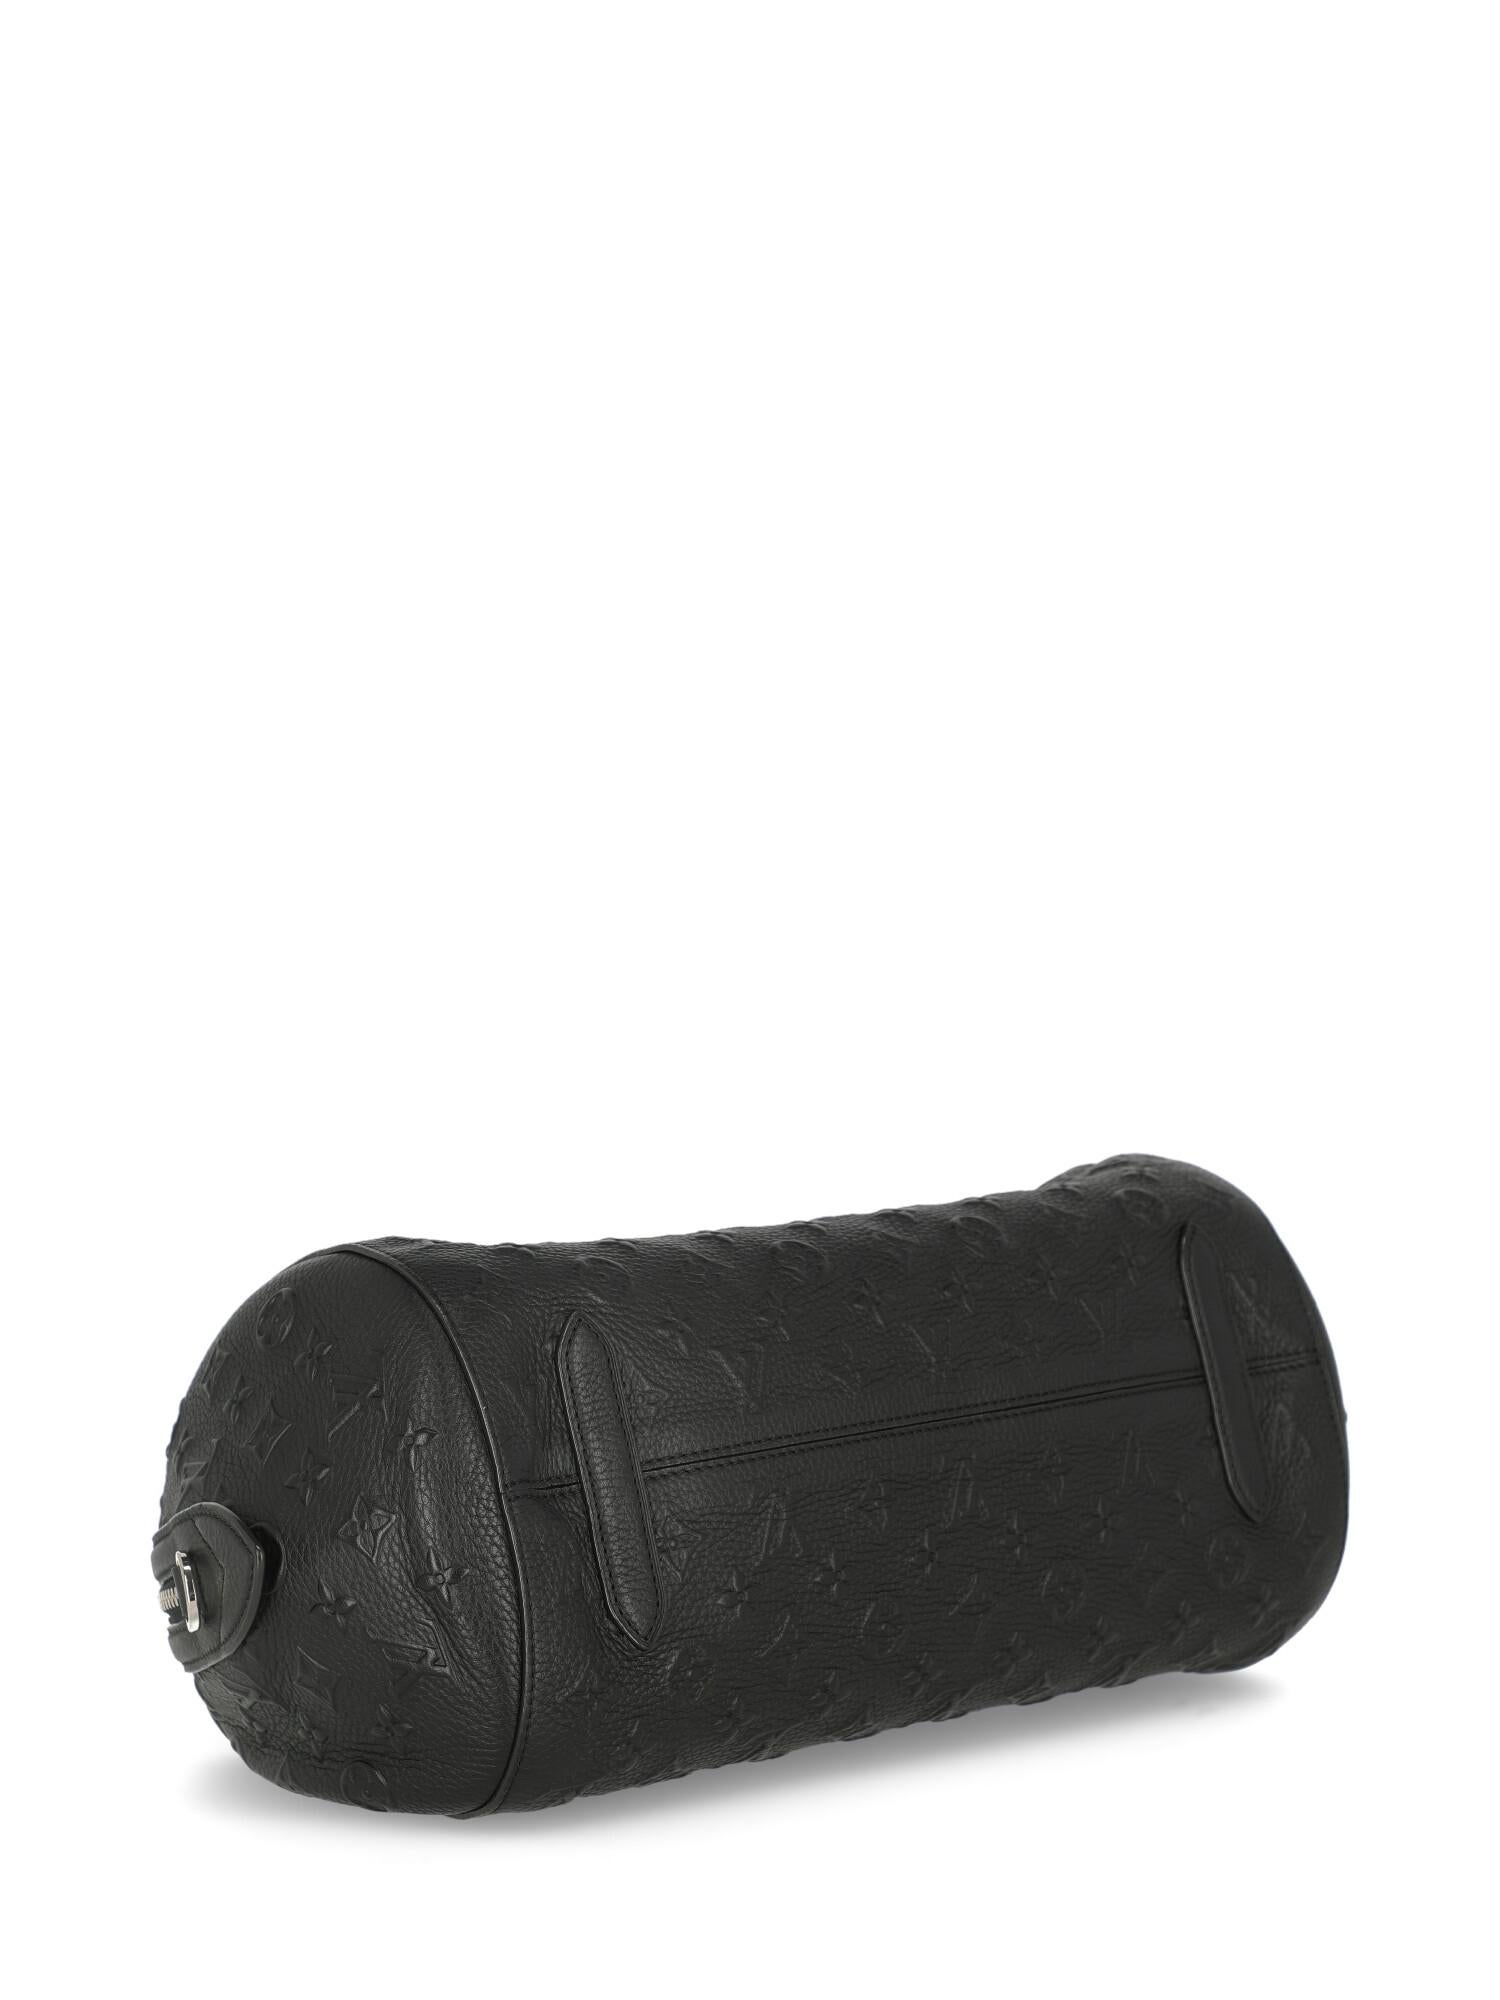 Louis Vuitton Woman Shoulder bag Black Leather 1